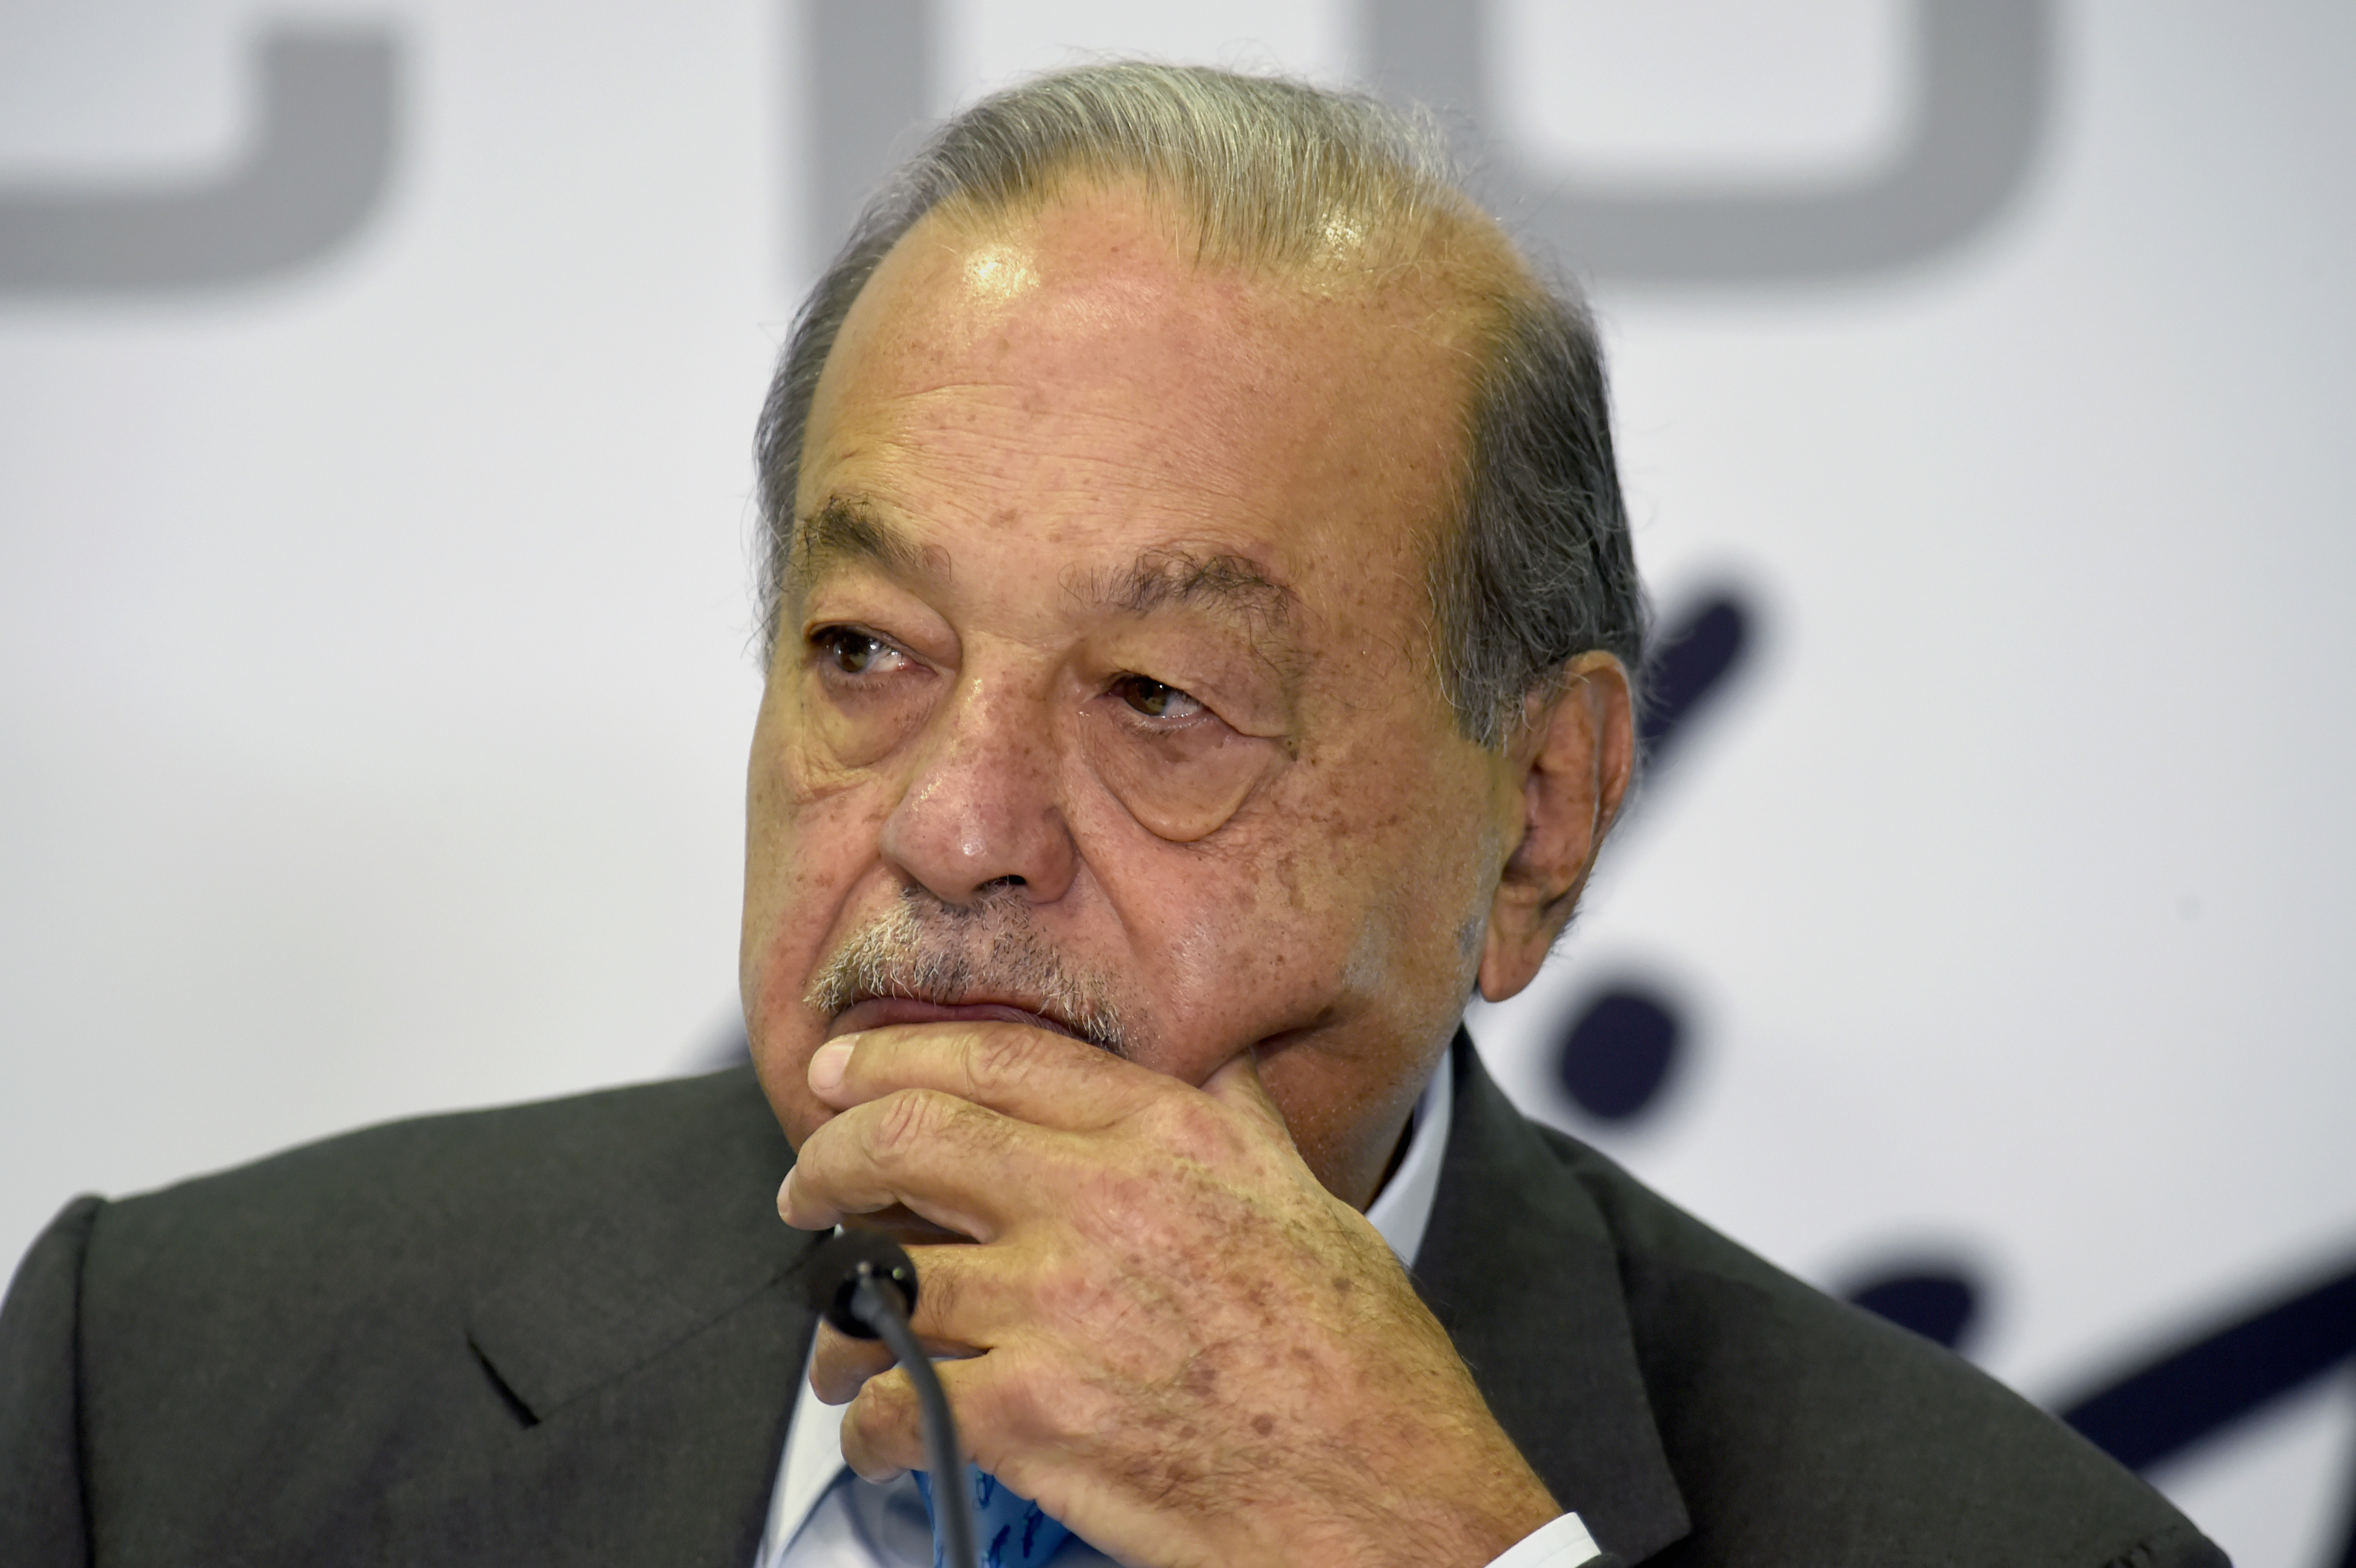 Carlos Slim es el hombre más rico de México y actualmente ocupa la posición número 16 del ranking de los hombres más ricos del mundo (FOTO: ALFREDO ESTRELLA / AFP)